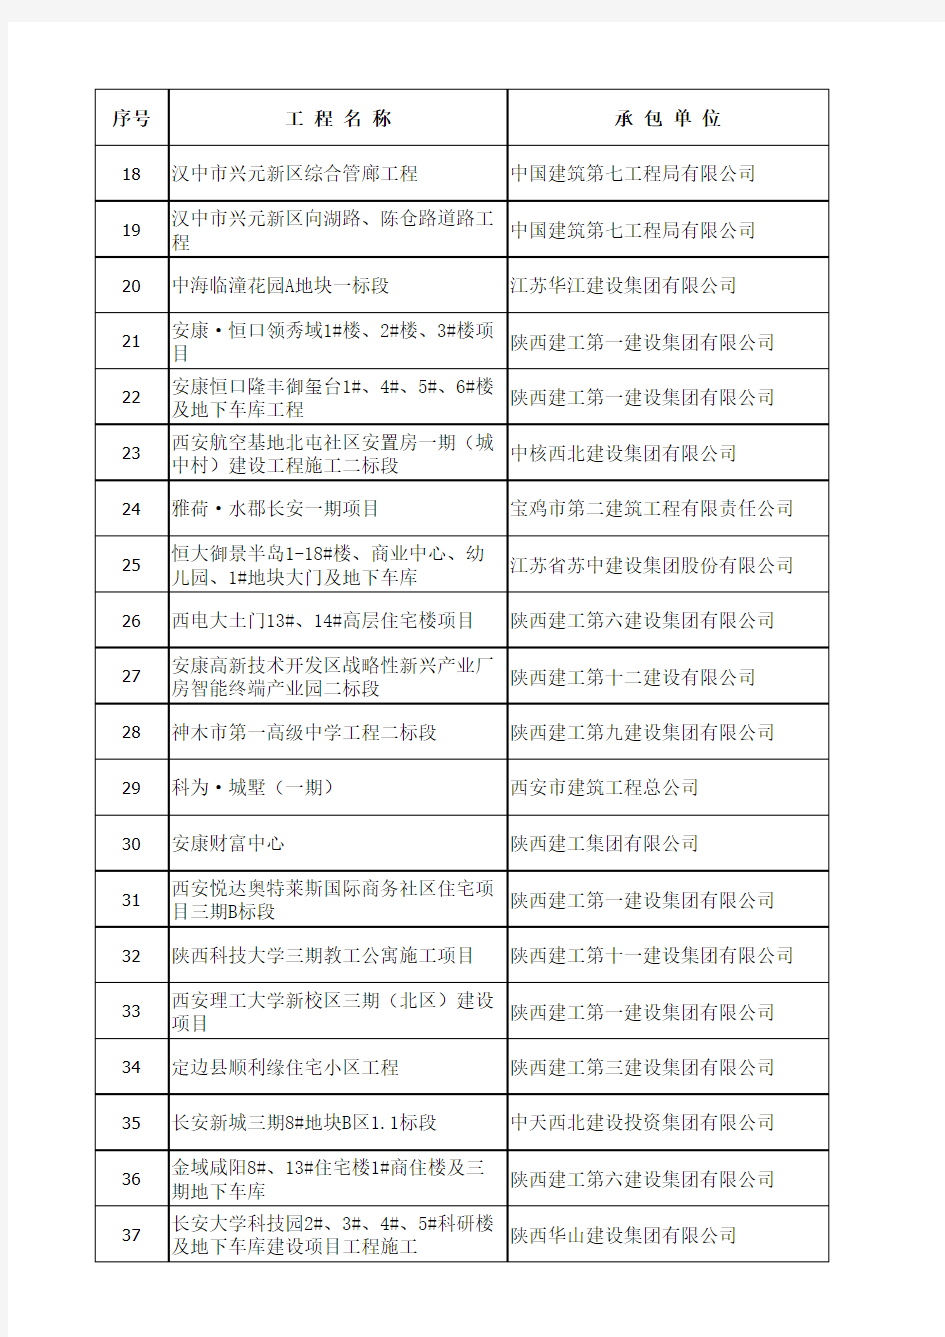 2018年度第二批陕西省建筑业绿色施工示范工程名单